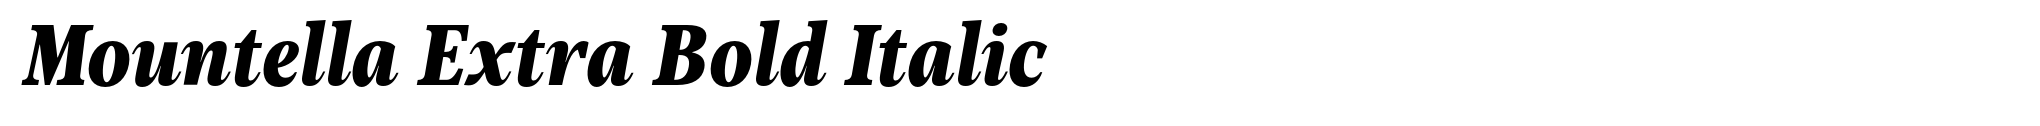 Mountella Extra Bold Italic image